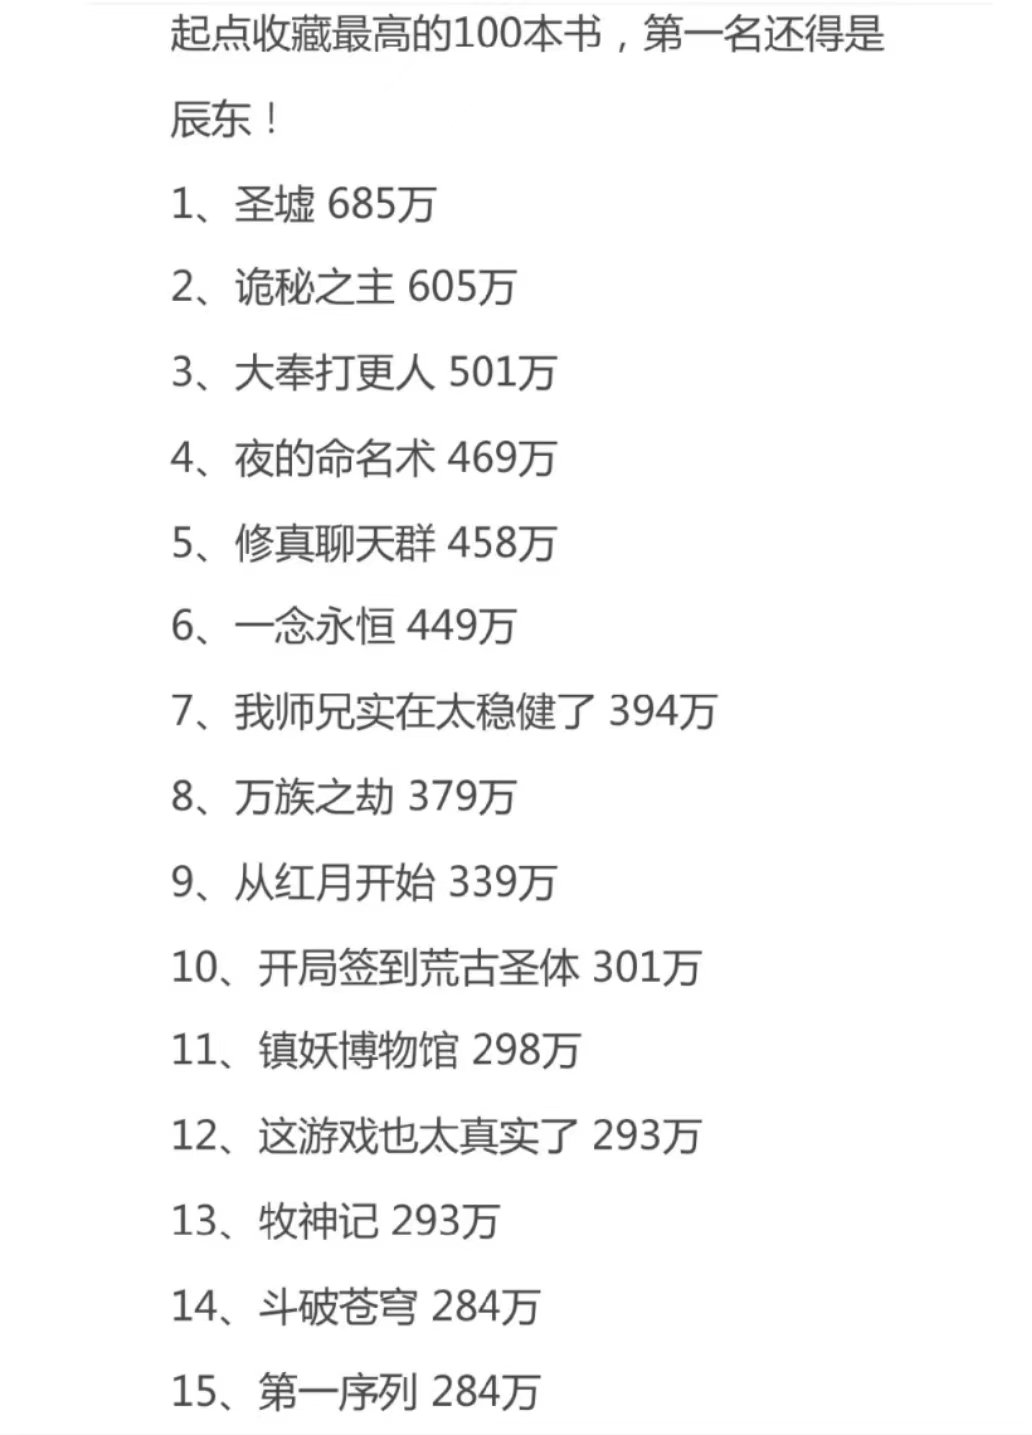 【书单】男频收藏最高的100本小说，第一名还是辰东